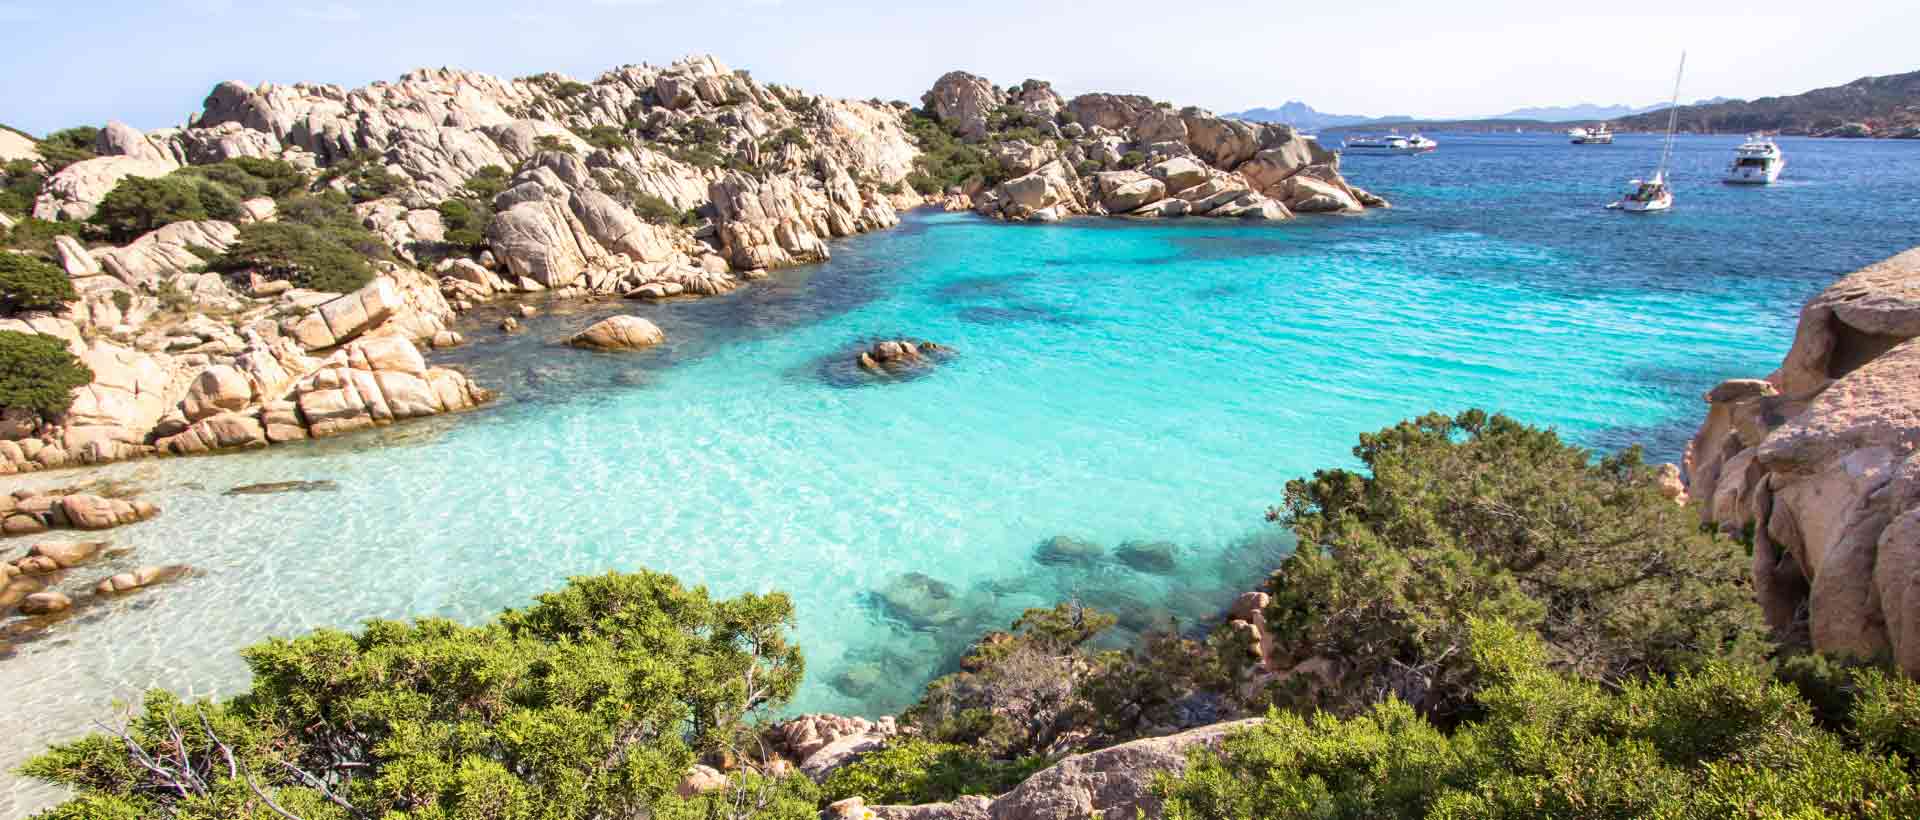 Сардиния — безопасный остров!